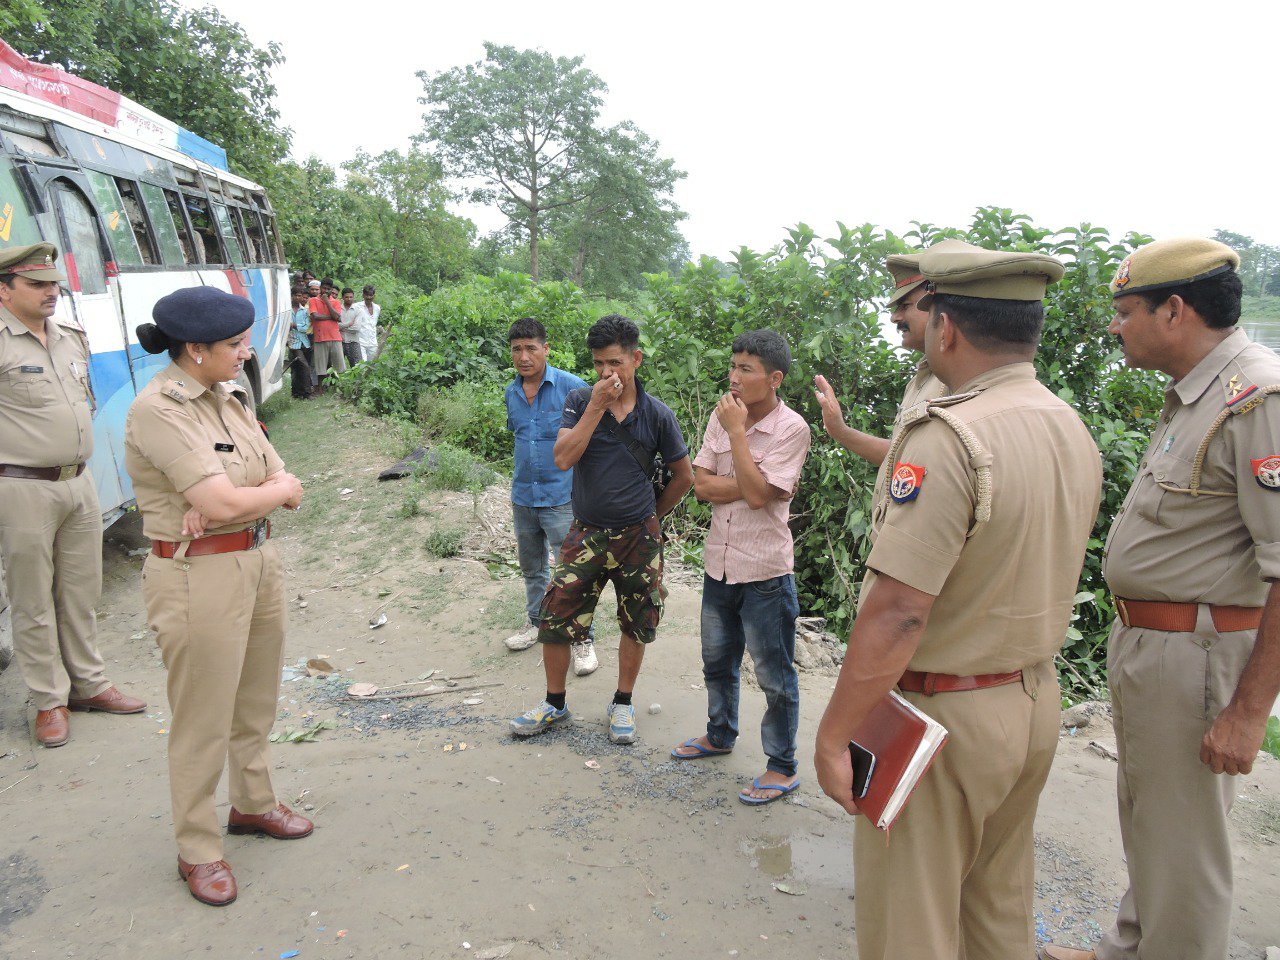 शिमला से नेपाल जा रही बस शारदा नहर में गिरी, सभी यात्रियों को पुलिस ने निकाला सुरक्षित बाहर | New India Times